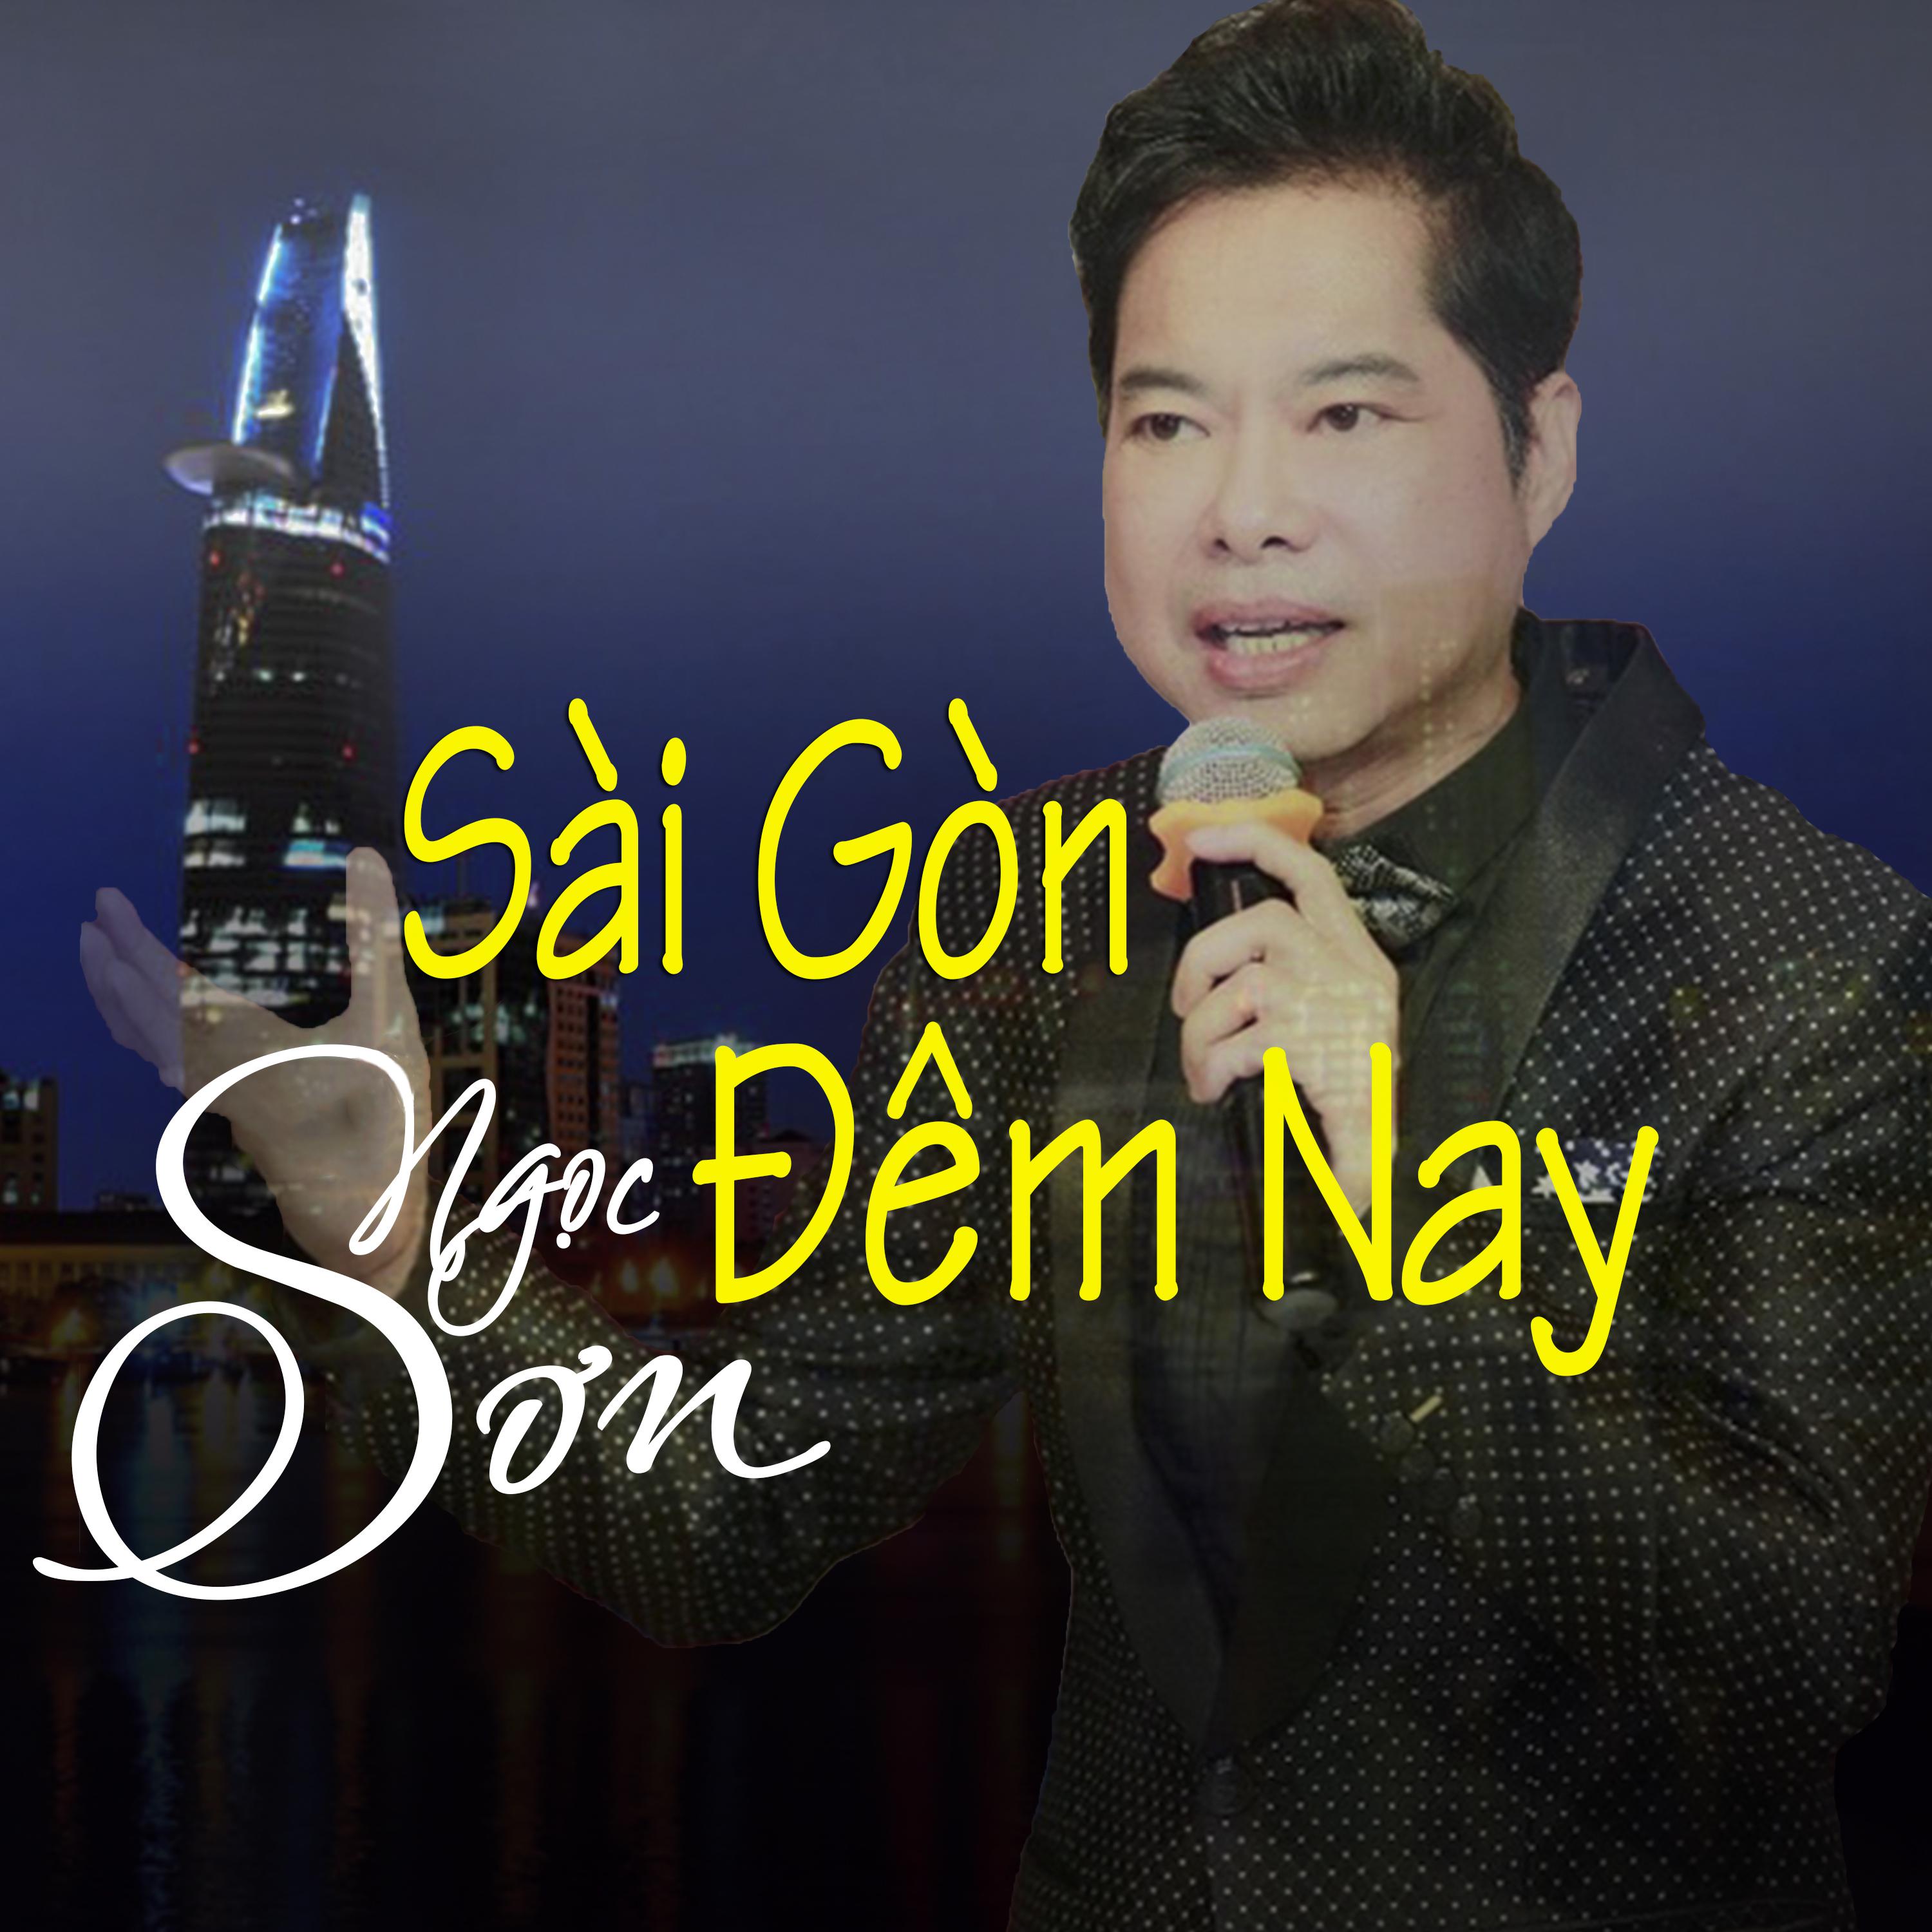 Sai Gon Dem Nay-Ngoc Son